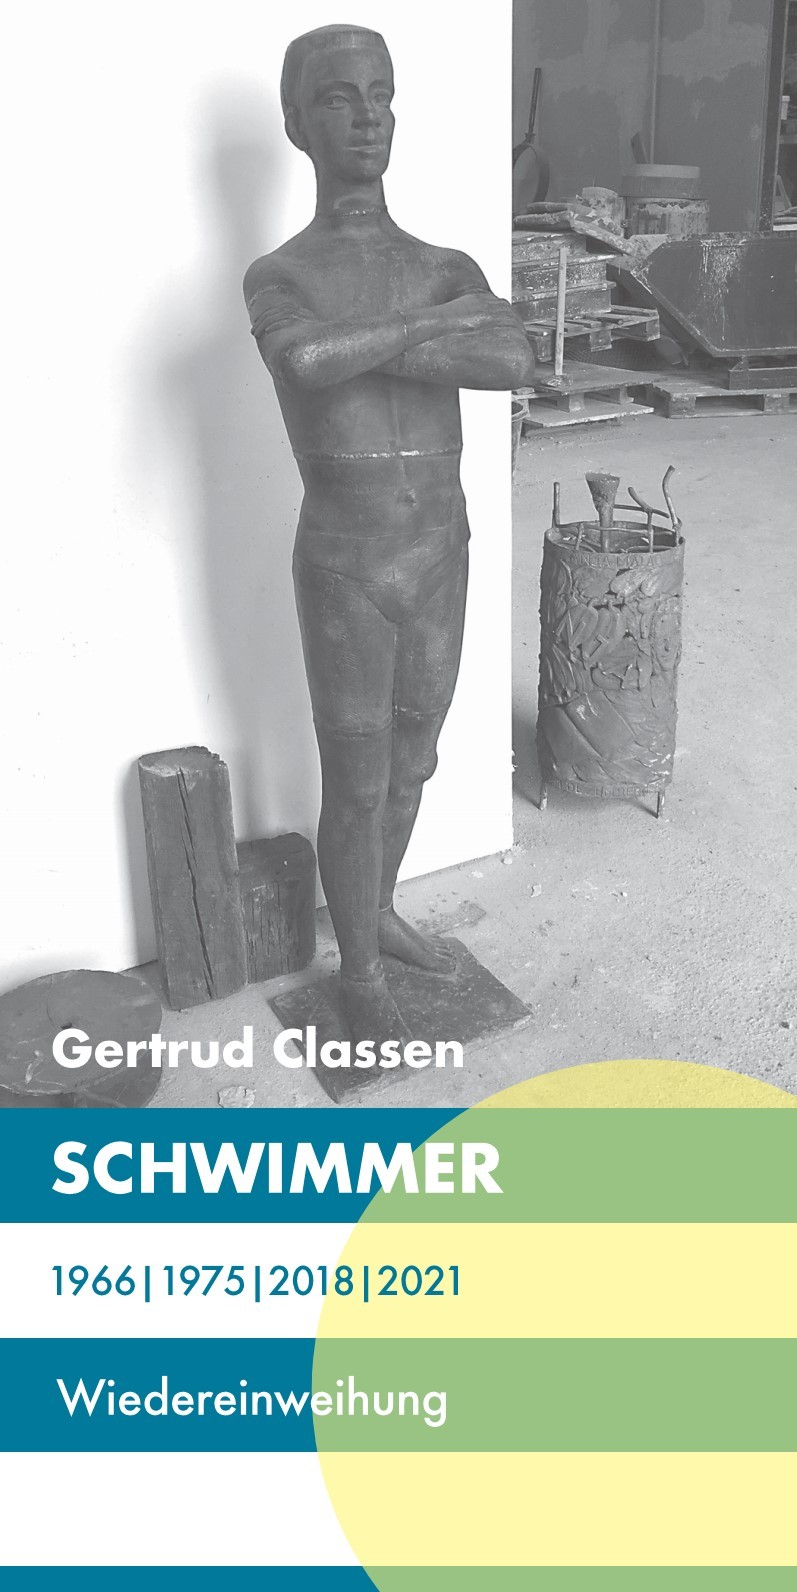 Gertrud Classen Schwimmer